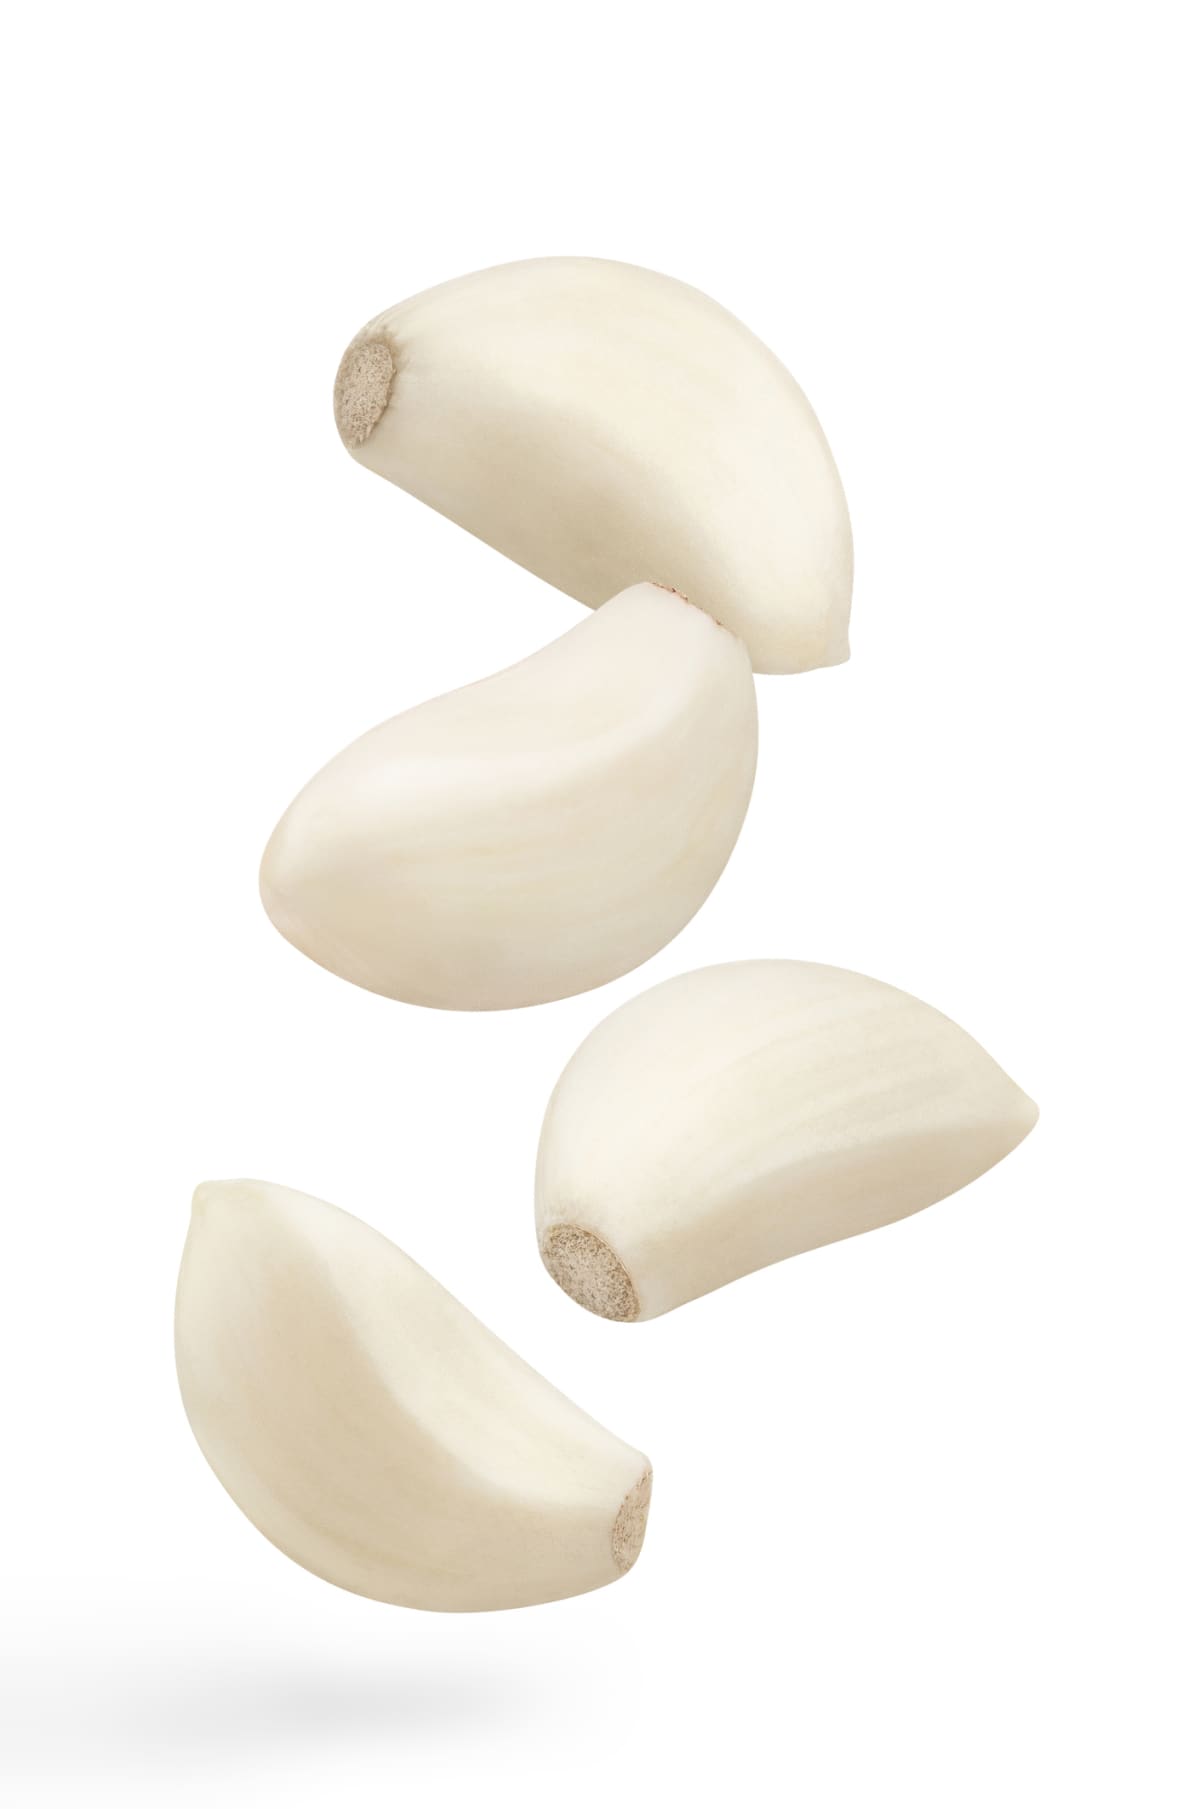 Garlic cloves in white background